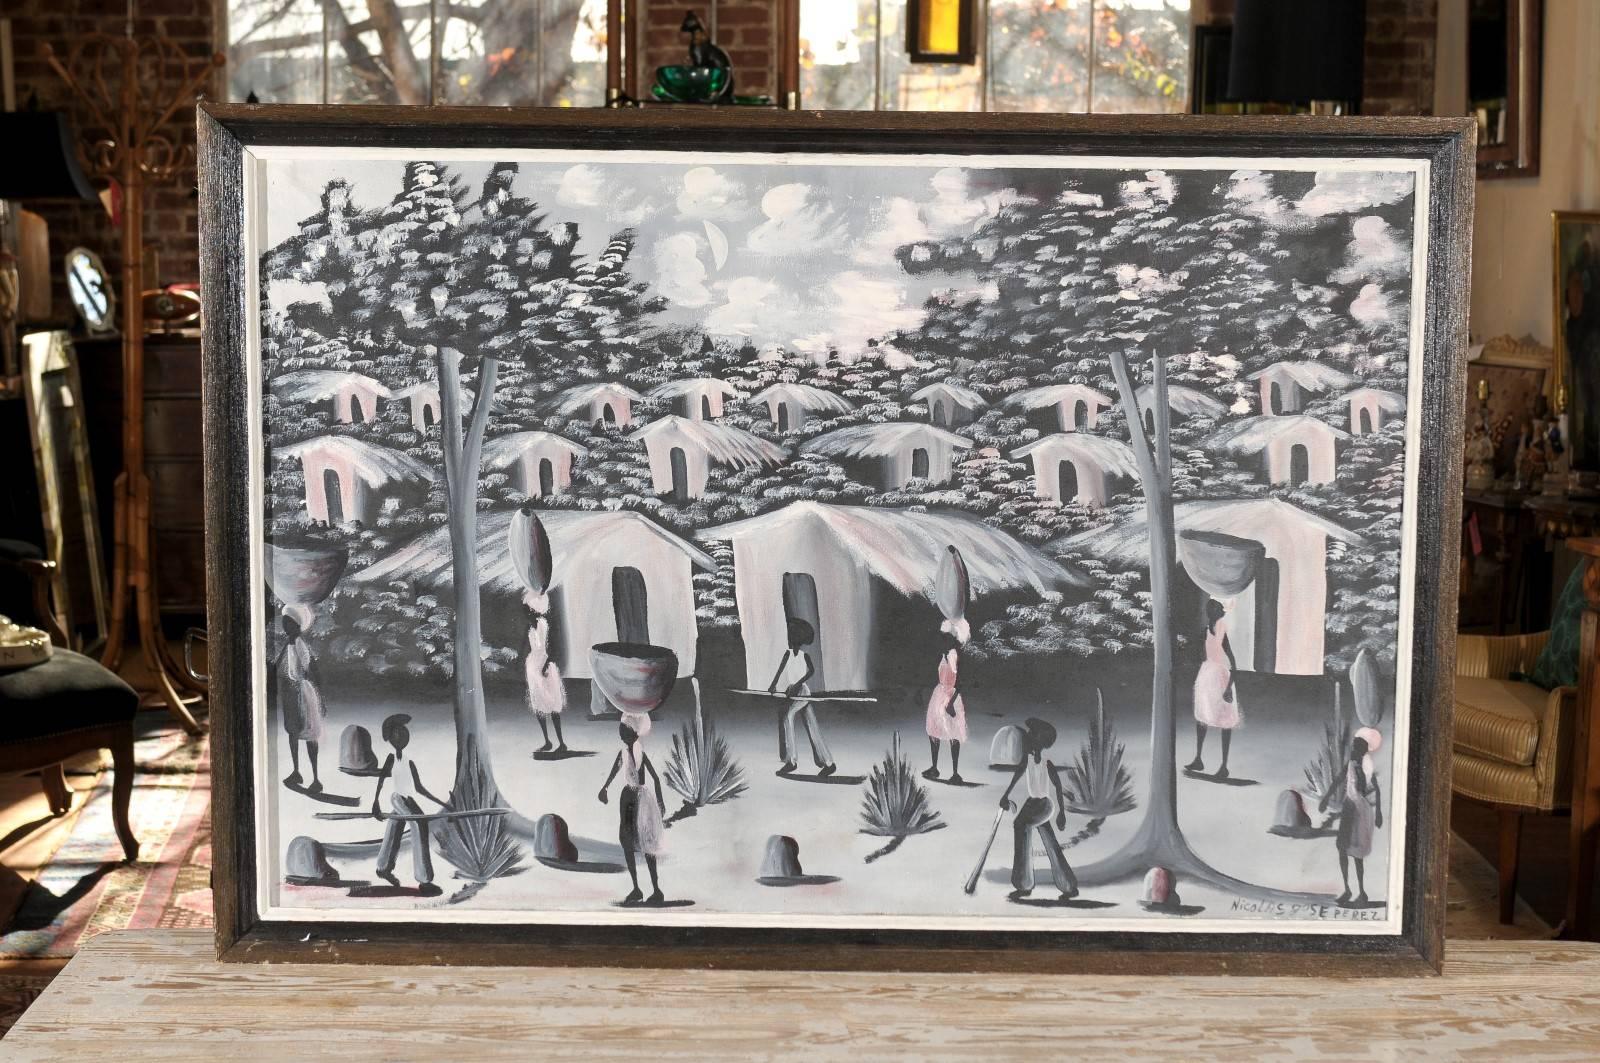 huile sur toile haïtienne du 20e siècle représentant un village peint dans des tons de noir, blanc, gris et rose pâle. Signé par l'artiste, en bas à droite, Nicolas Jose Perez et conservé dans un cadre en bois.